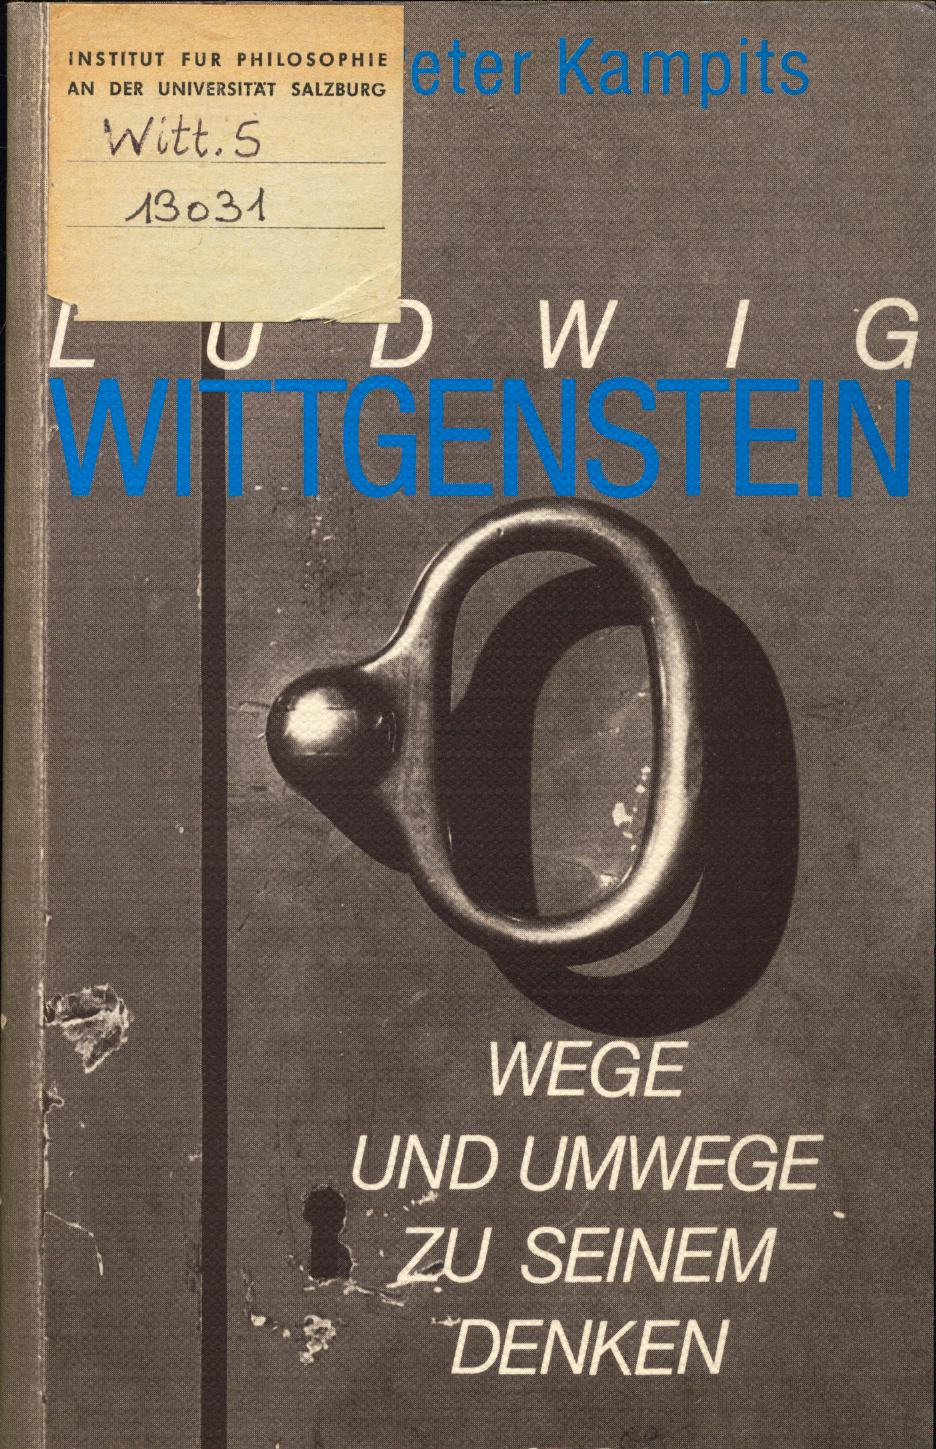 Ludwig Wittgenstein Wege und Umwege zu seinem Denken - Kampits, Peter